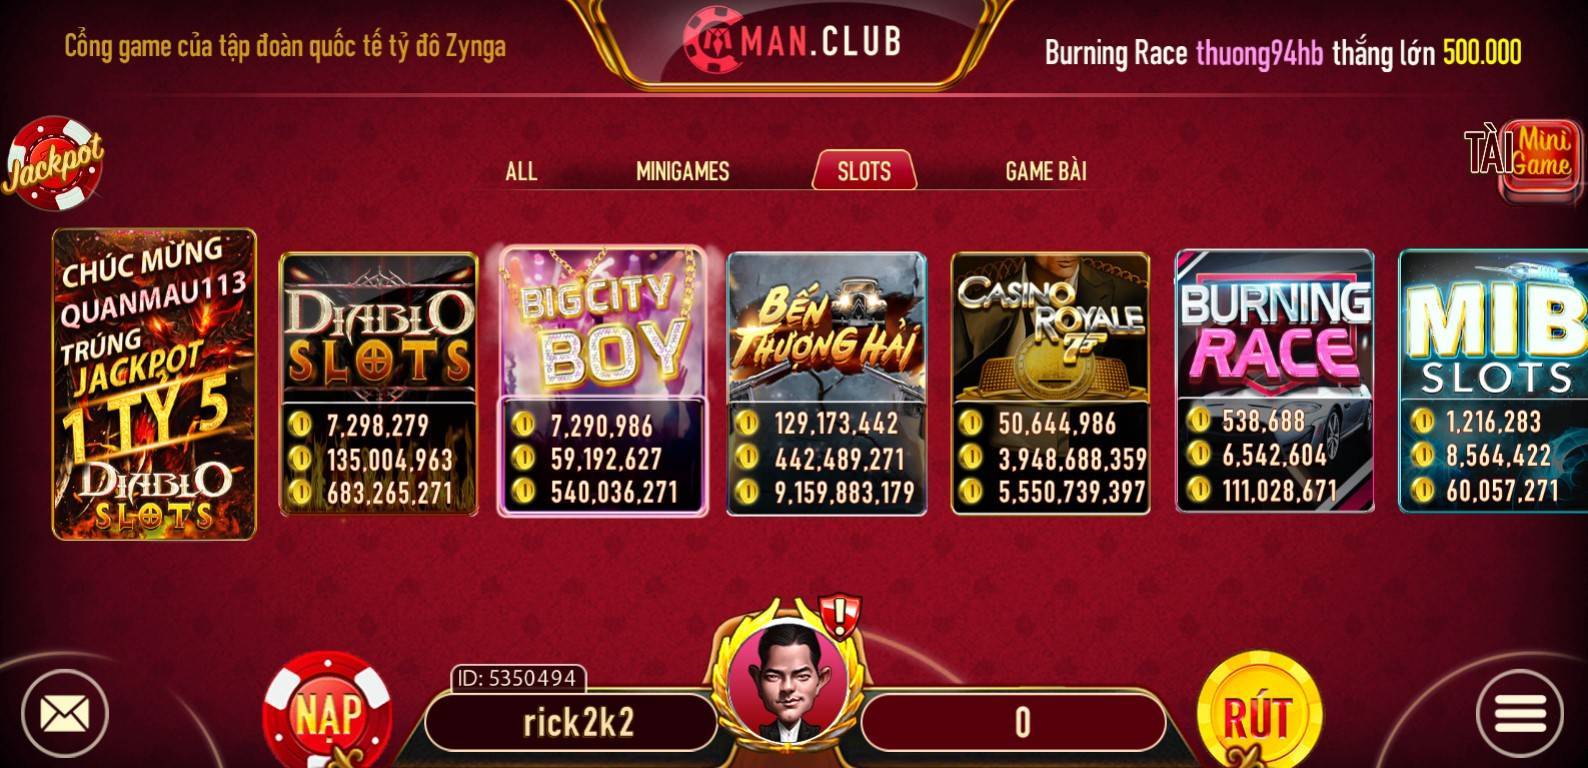 Game Slots tại Man Club